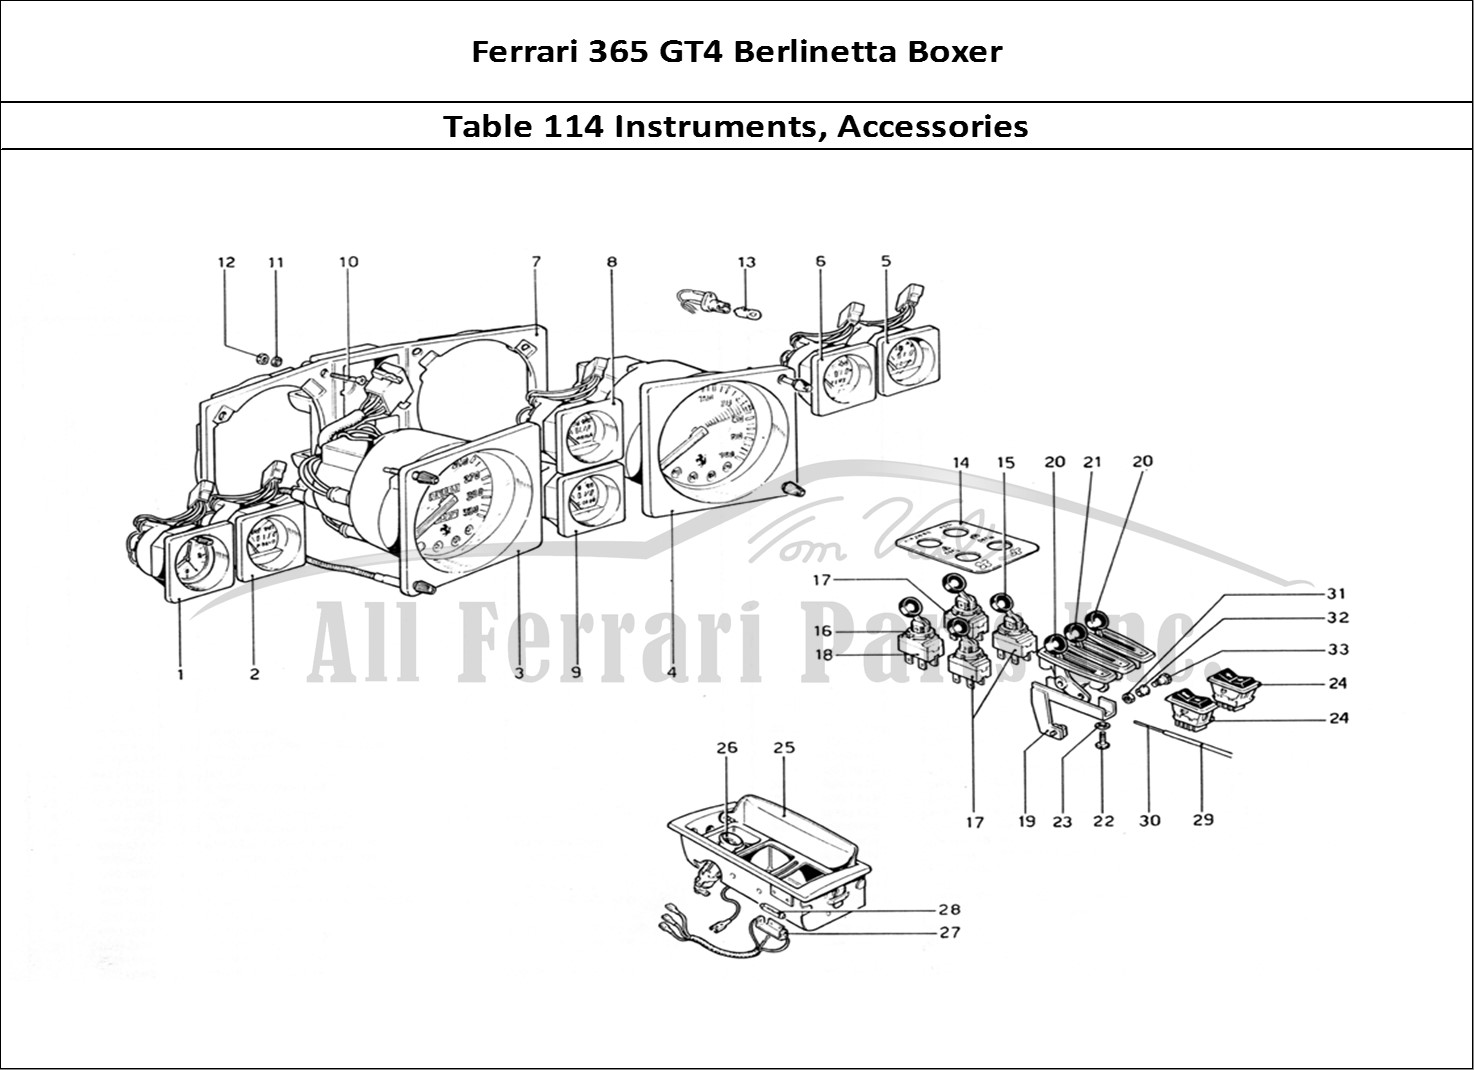 Ferrari Parts Ferrari 365 GT4 Berlinetta Boxer Page 114 Instruments and Accessori